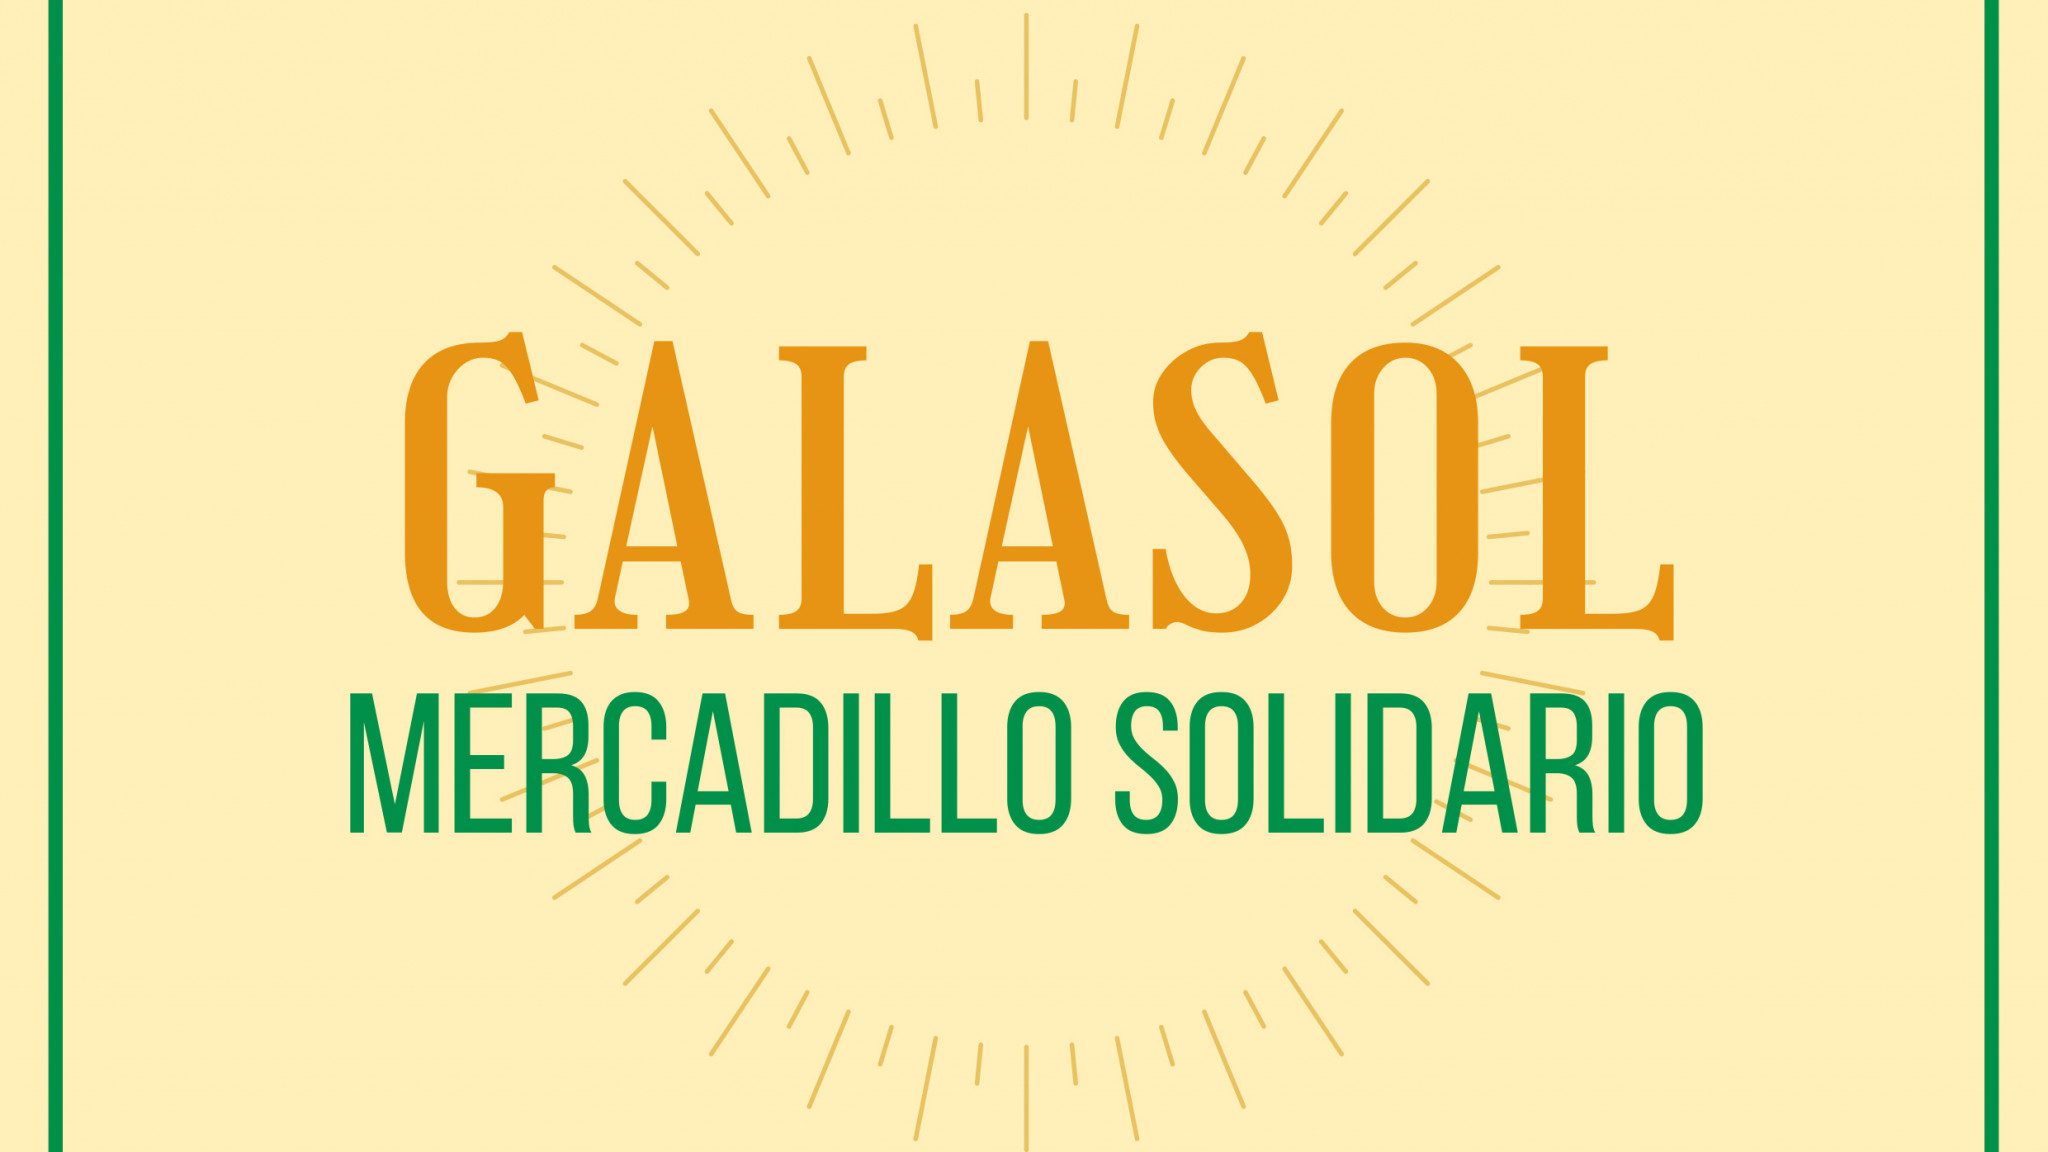 Mercadillo Galasol